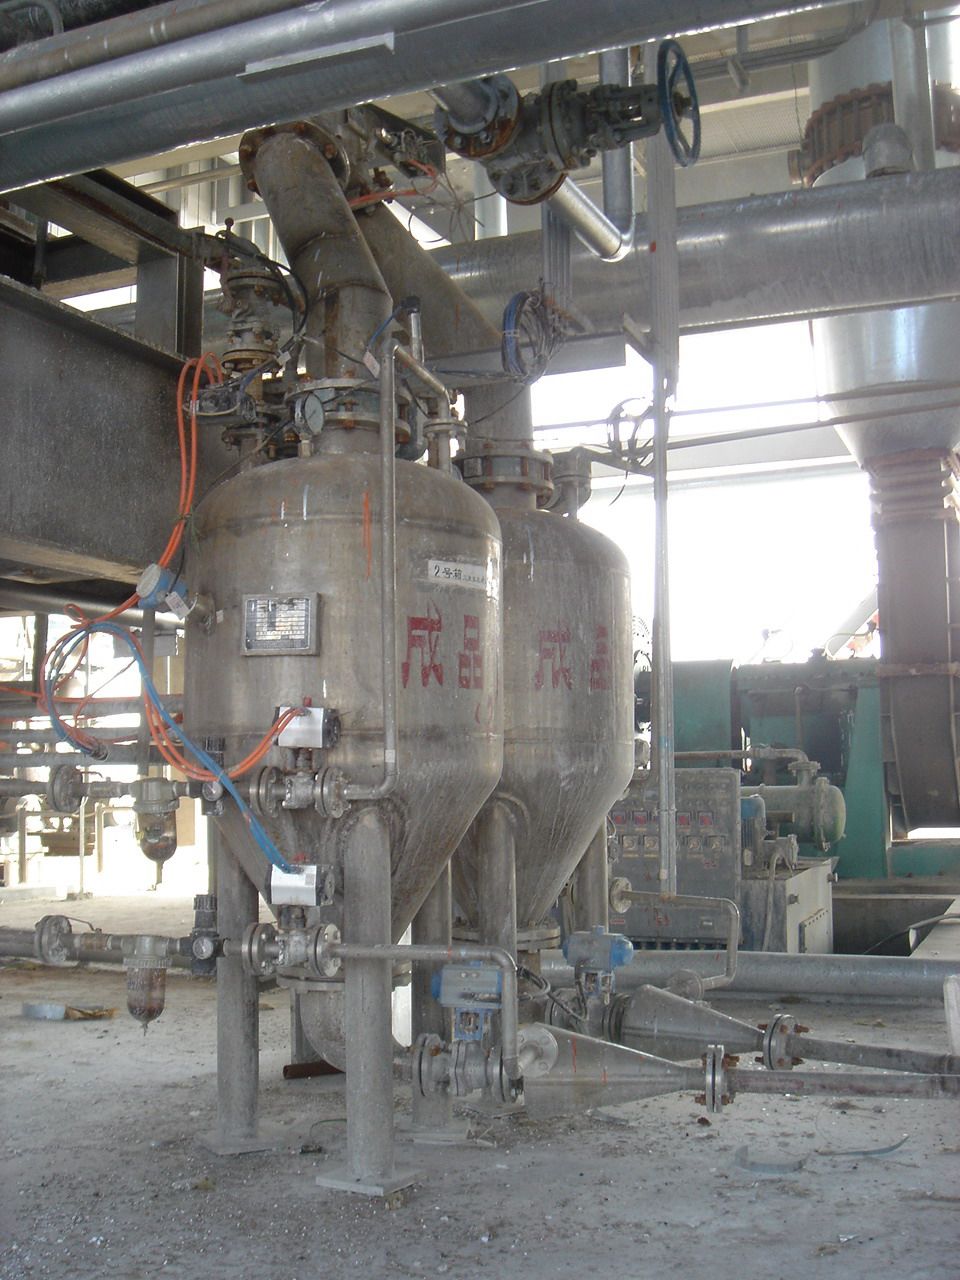 山东华鲁恒升化工公司三聚氰胺下行式正压密相气力输送仓泵1-4号线